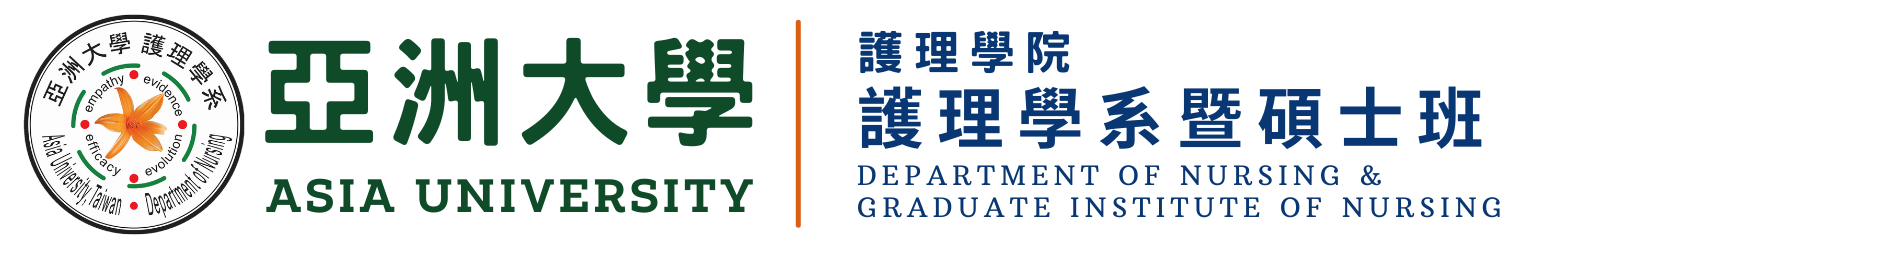 Department of Nursing & Graduate institute of Nursing, Asia University Logo